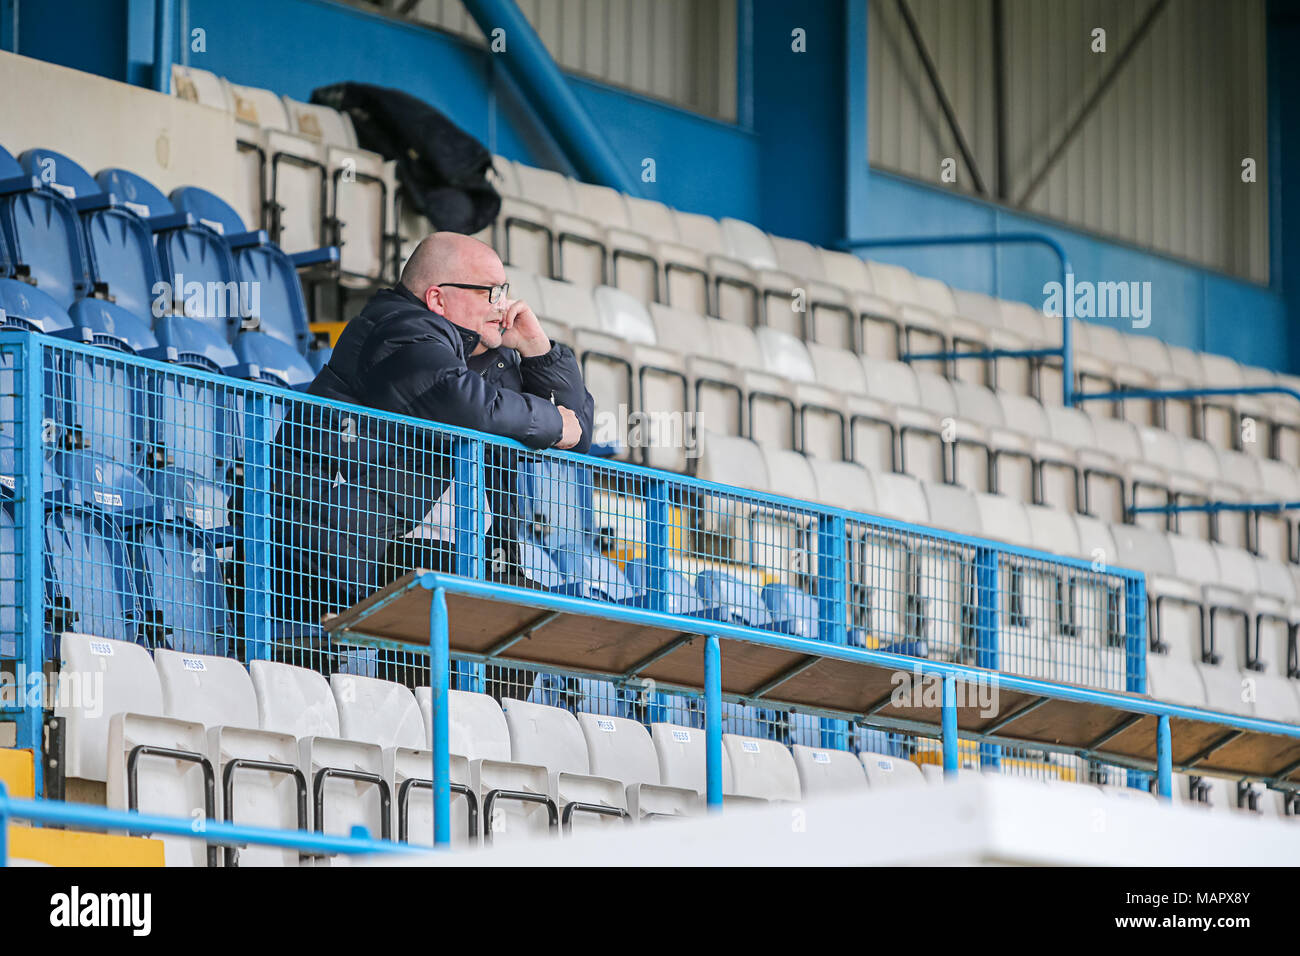 Solitario simpatizante de fútbol sentado en las gradas de hablar en el teléfono. Foto de stock